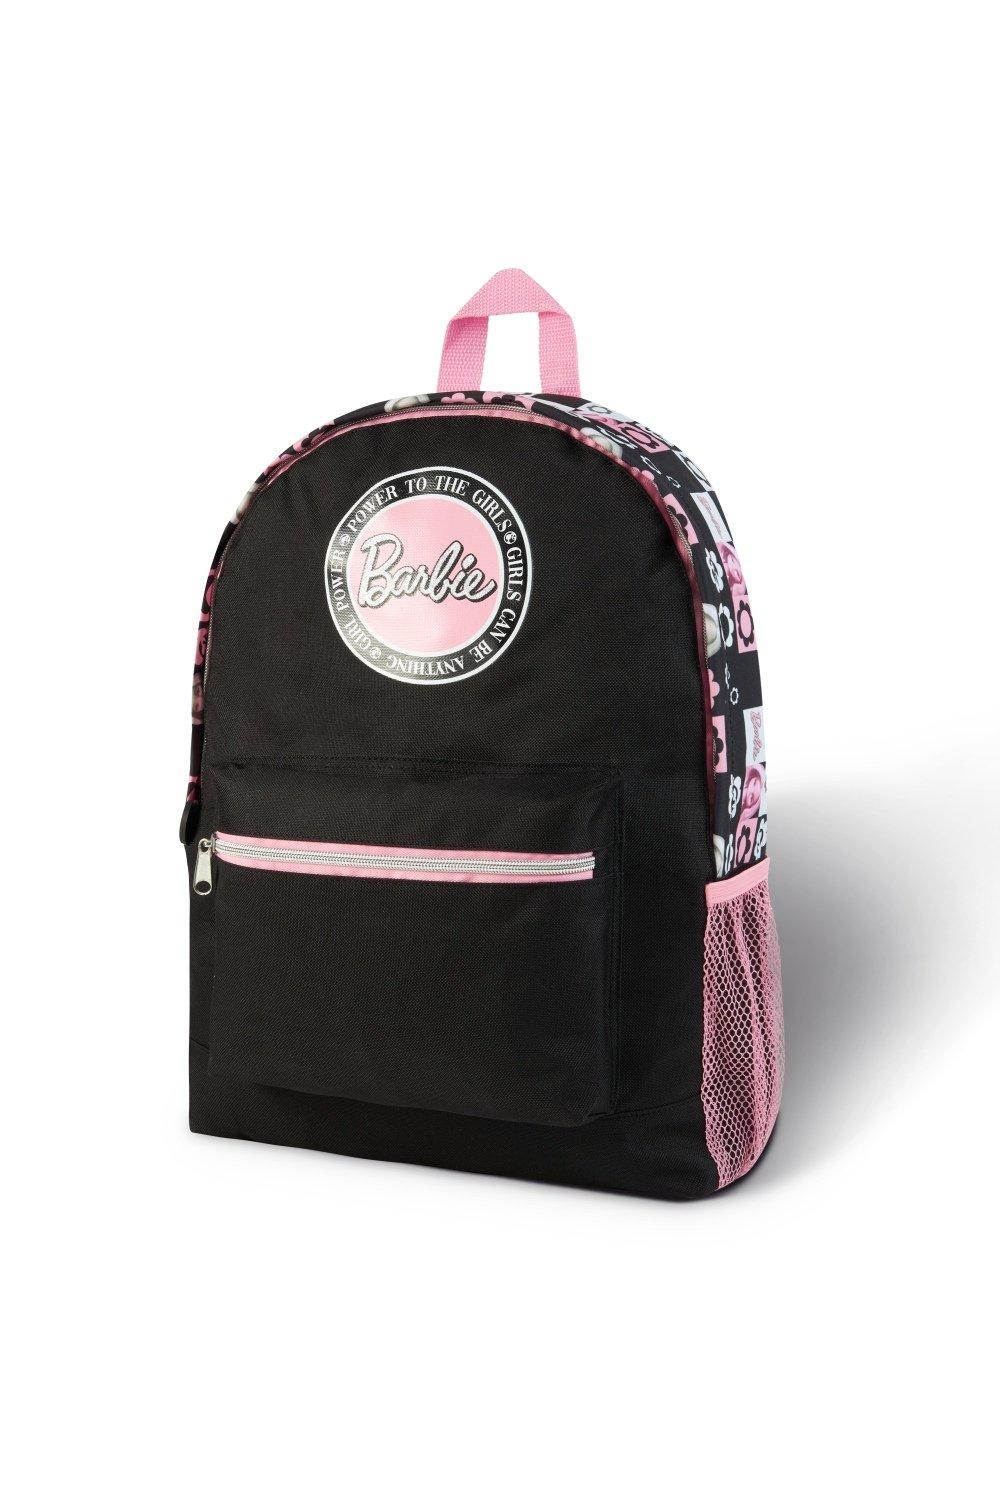 Школьная сумка Barbie, мультиколор холщовый рюкзак на шнурке модный школьный рюкзак повседневный рюкзак на шнурке школьный рюкзак для девочек подростков